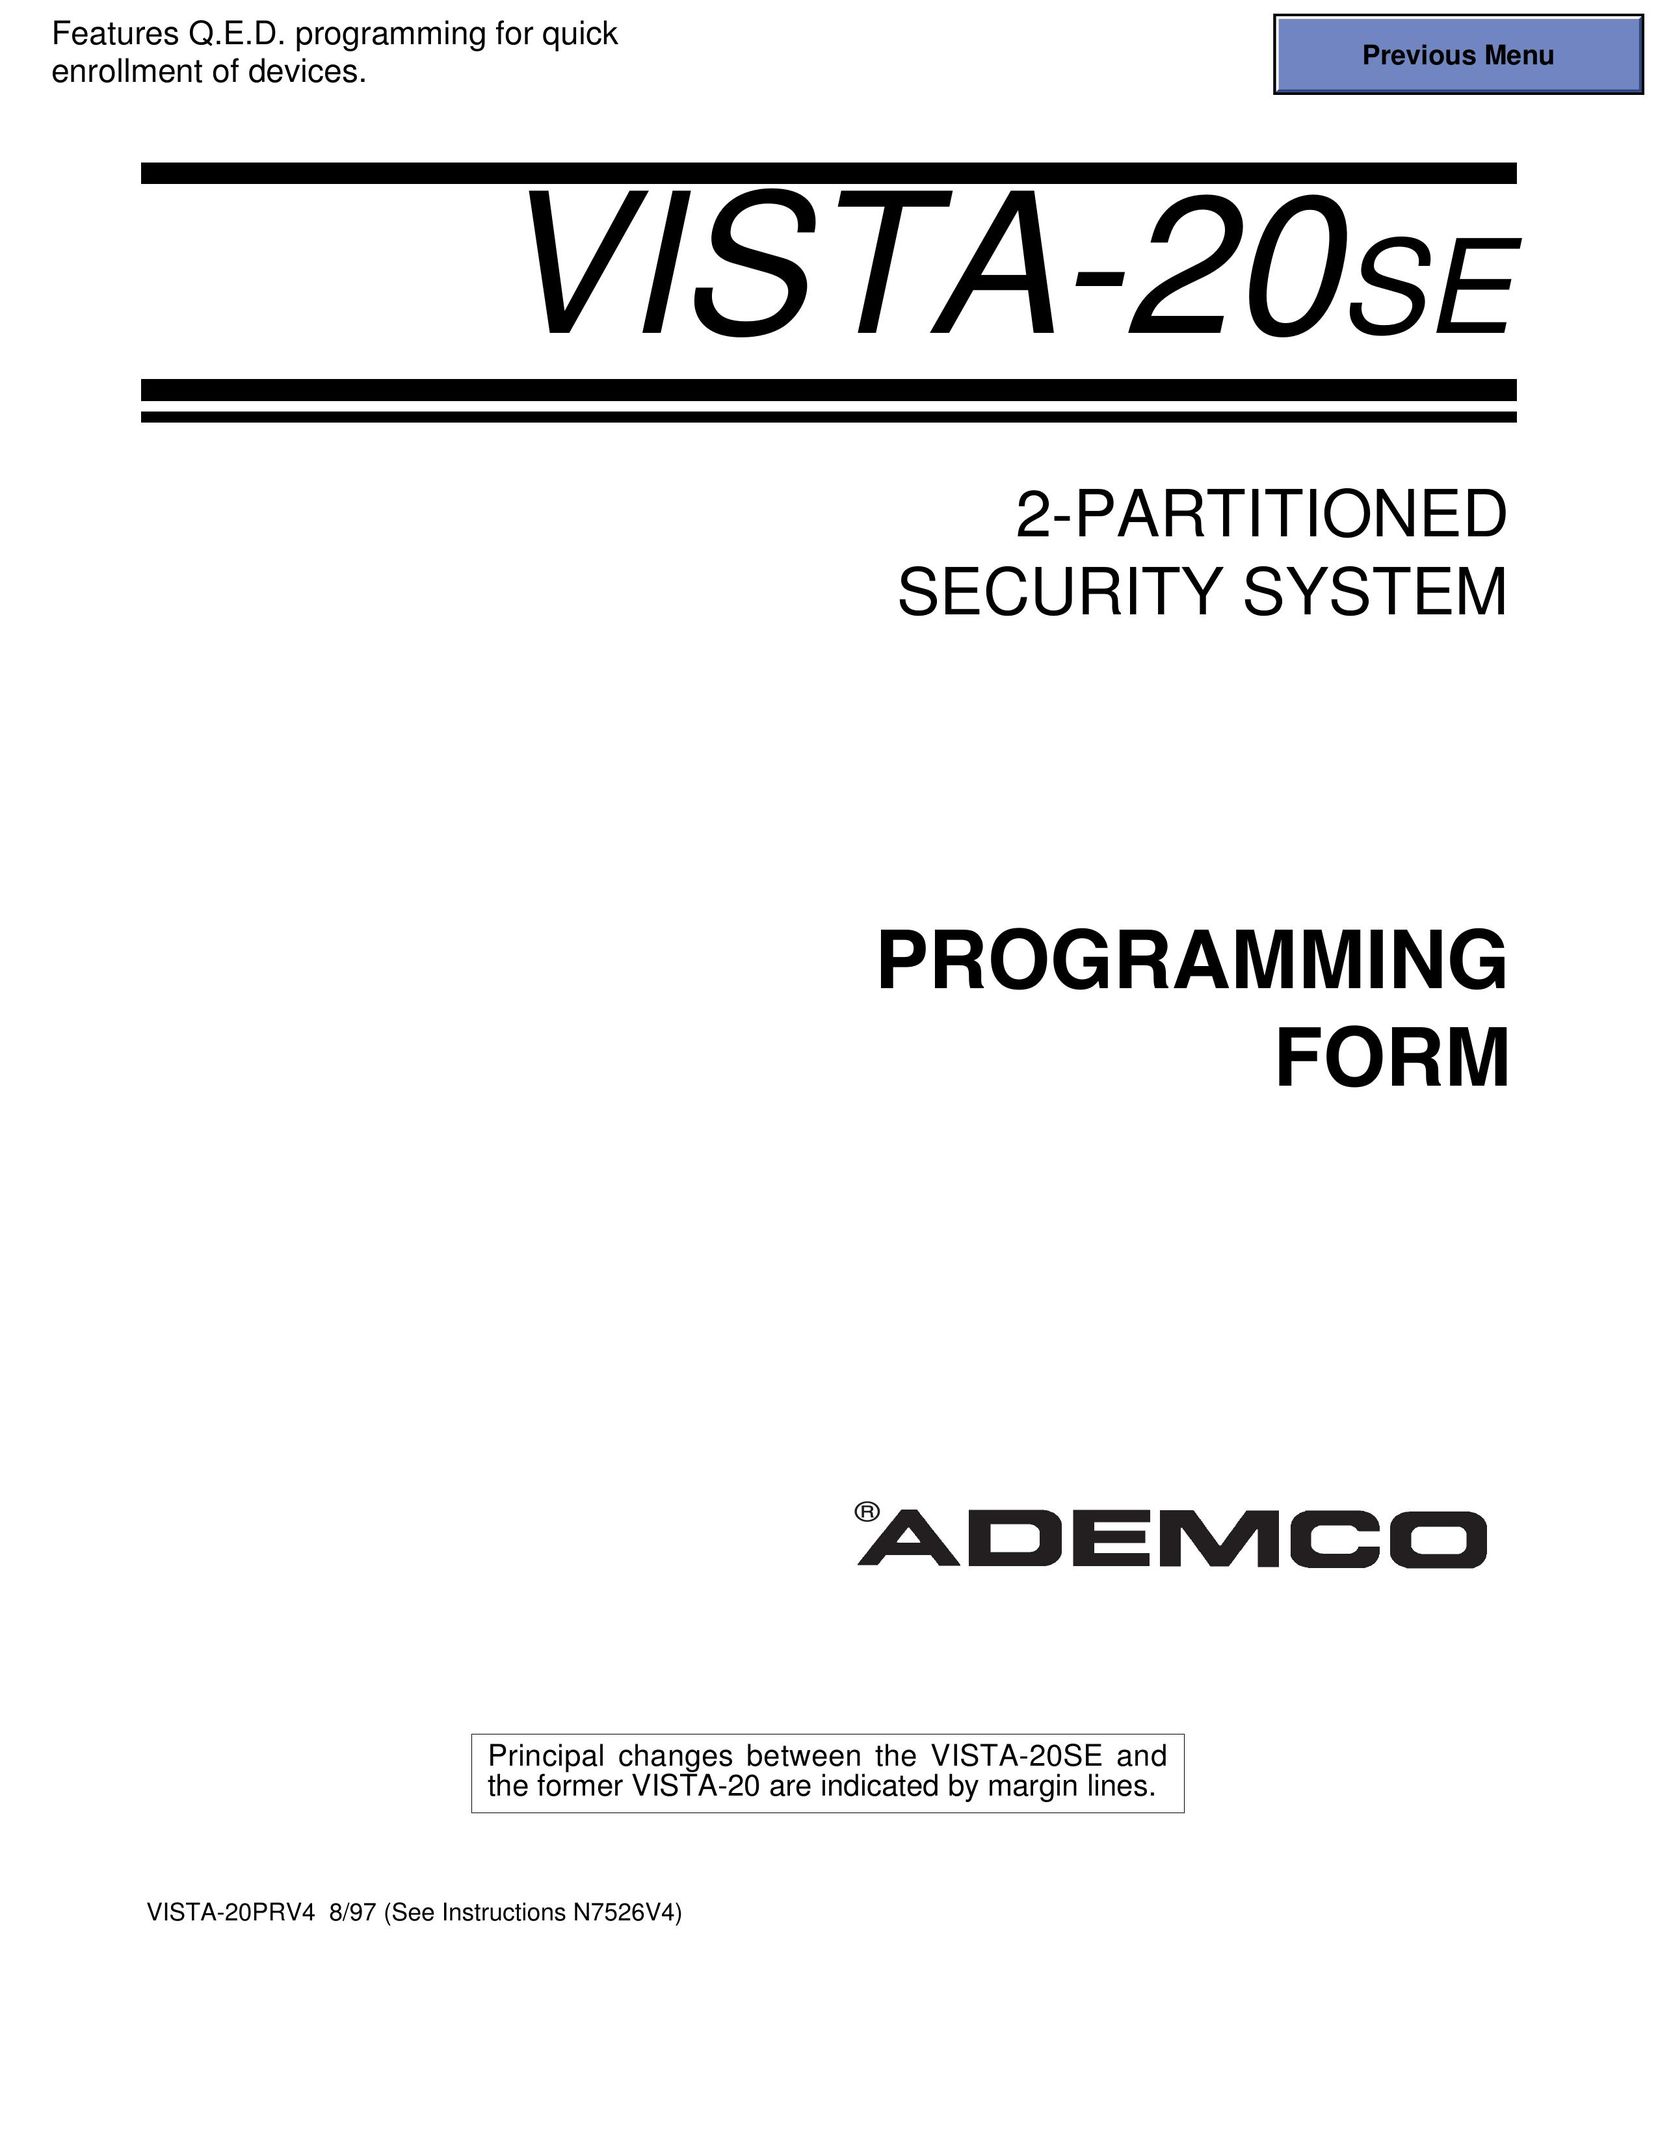 Vista 20SE Answering Machine User Manual